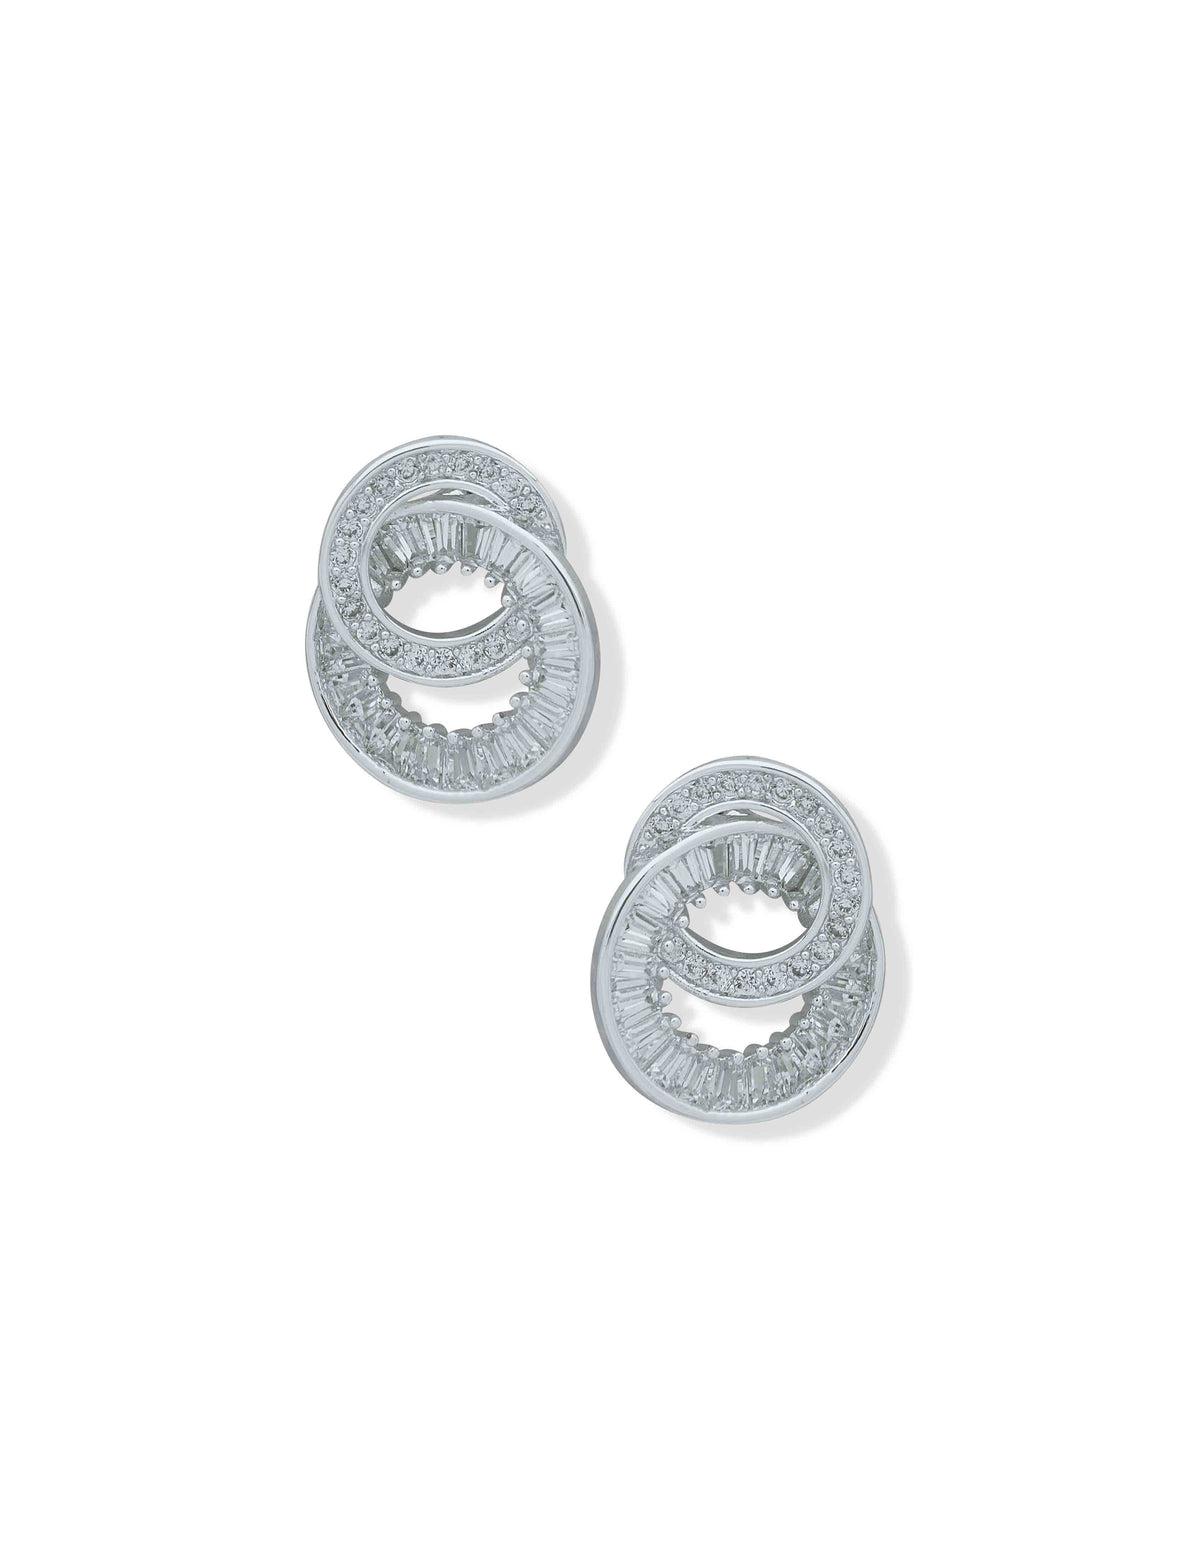 Anne Klein Silver Tone CZ Open Button Earrings